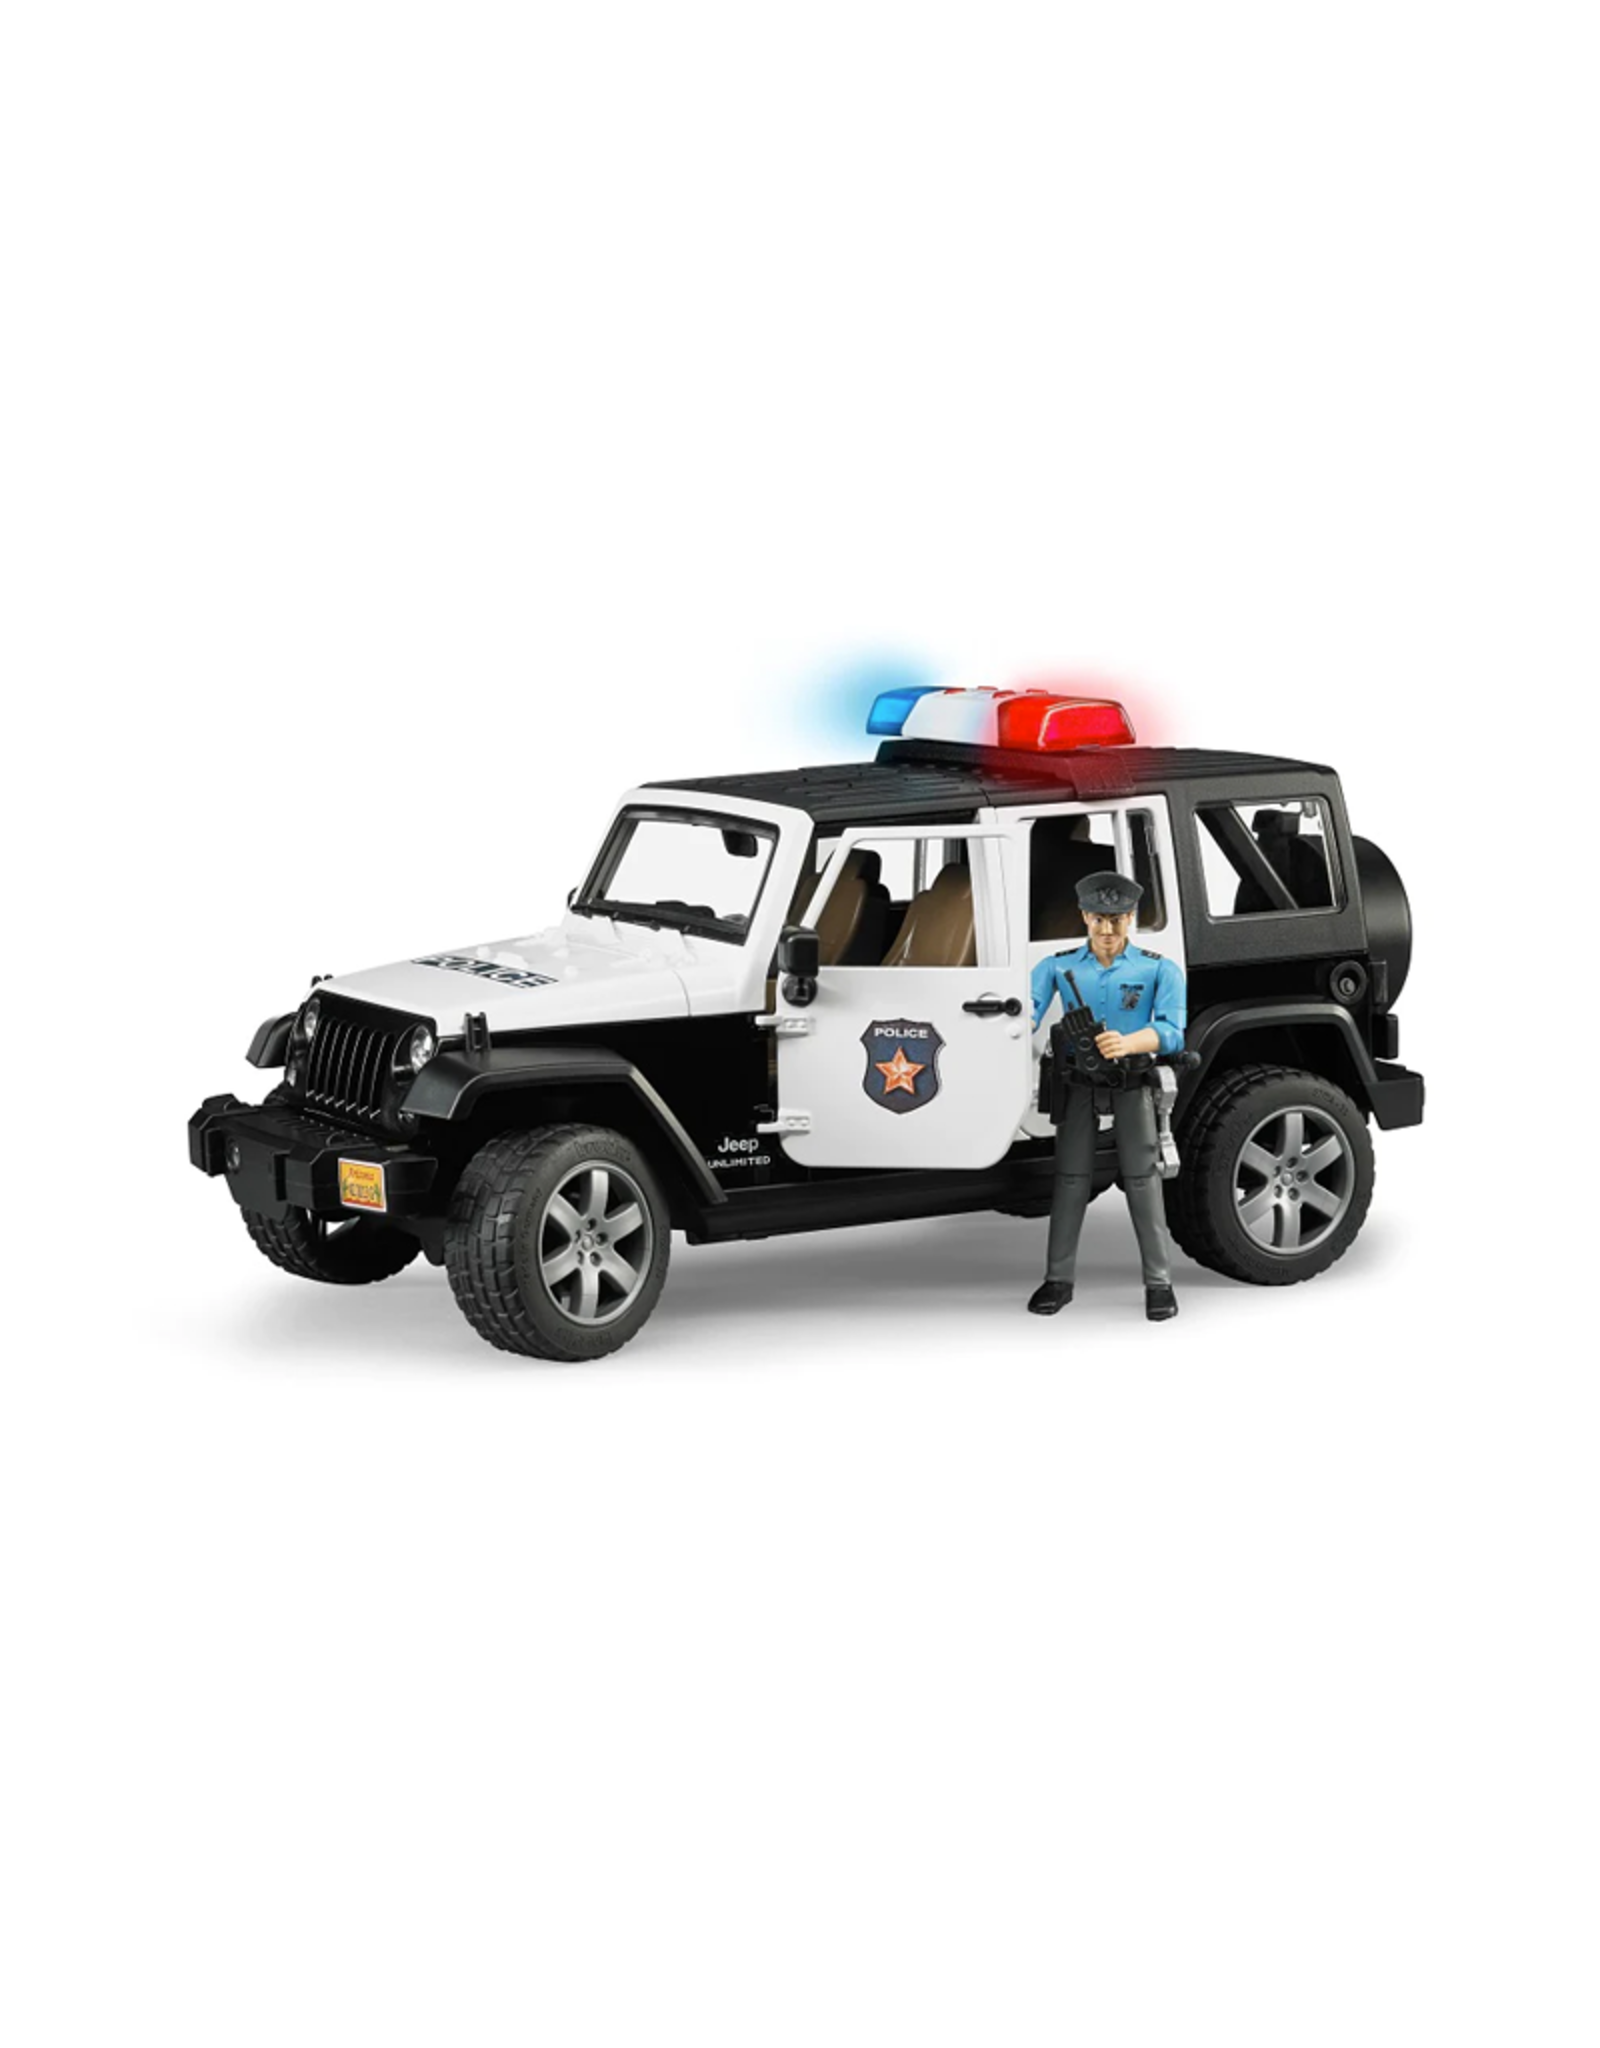 Bruder Jeep Rubicon Police car + light skin Policeman